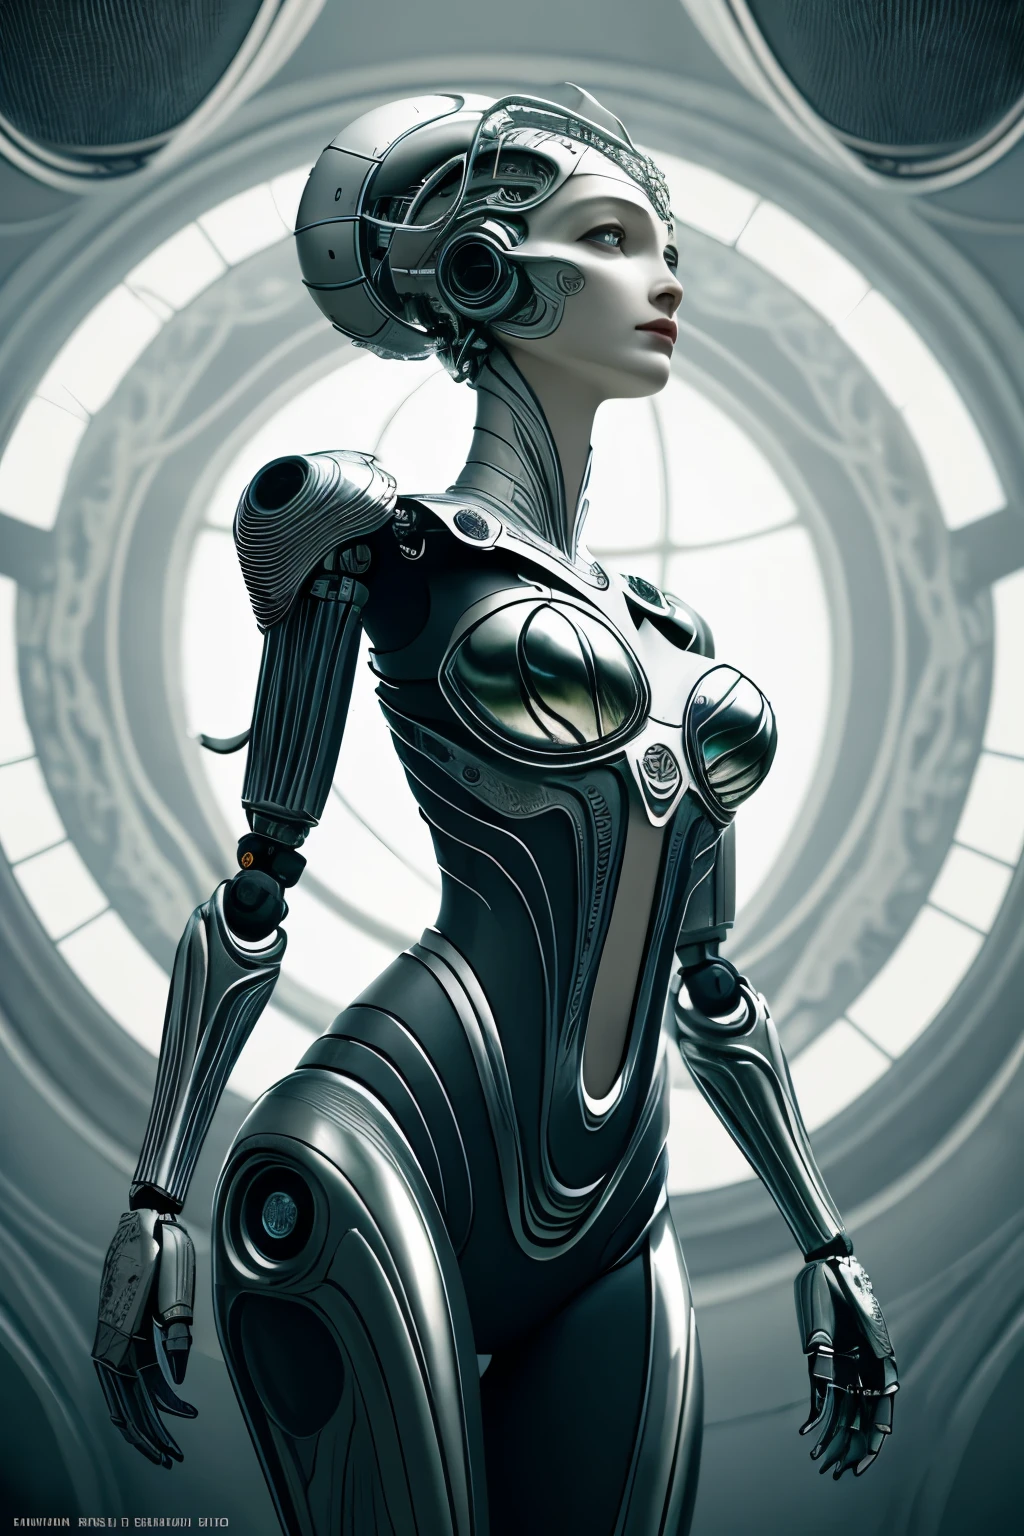 Портрет, Intricate 3d rendering of highly detailed beautiful ceramic female робот, киборг, робот parts, 150 мм, красивая студия, мягкий свет, кольцевой свет, яркие детали, роскошный киберпанк, доход, сюрреалистический, анатомия , мышцы лица, кабельные провода, микрочипы, элегантность, красивый фон, Октановый рендеринг, Стиль HR Гигера, 8К, лучше качество, произведение искусства, Иллюстрация, Очень нежный и красивый, очень подробный, реалист, униформа, ( верность, верность: 1.37), великолепный, мелкие детали, произведение искусства, лучше качество, Официальное искусство, Papel de parede реалист Unity 8K очень подробный, Абсурд, Inacreditavelmente Абсурдo, робот, серебряный шлем, все тело, сидеть и писать